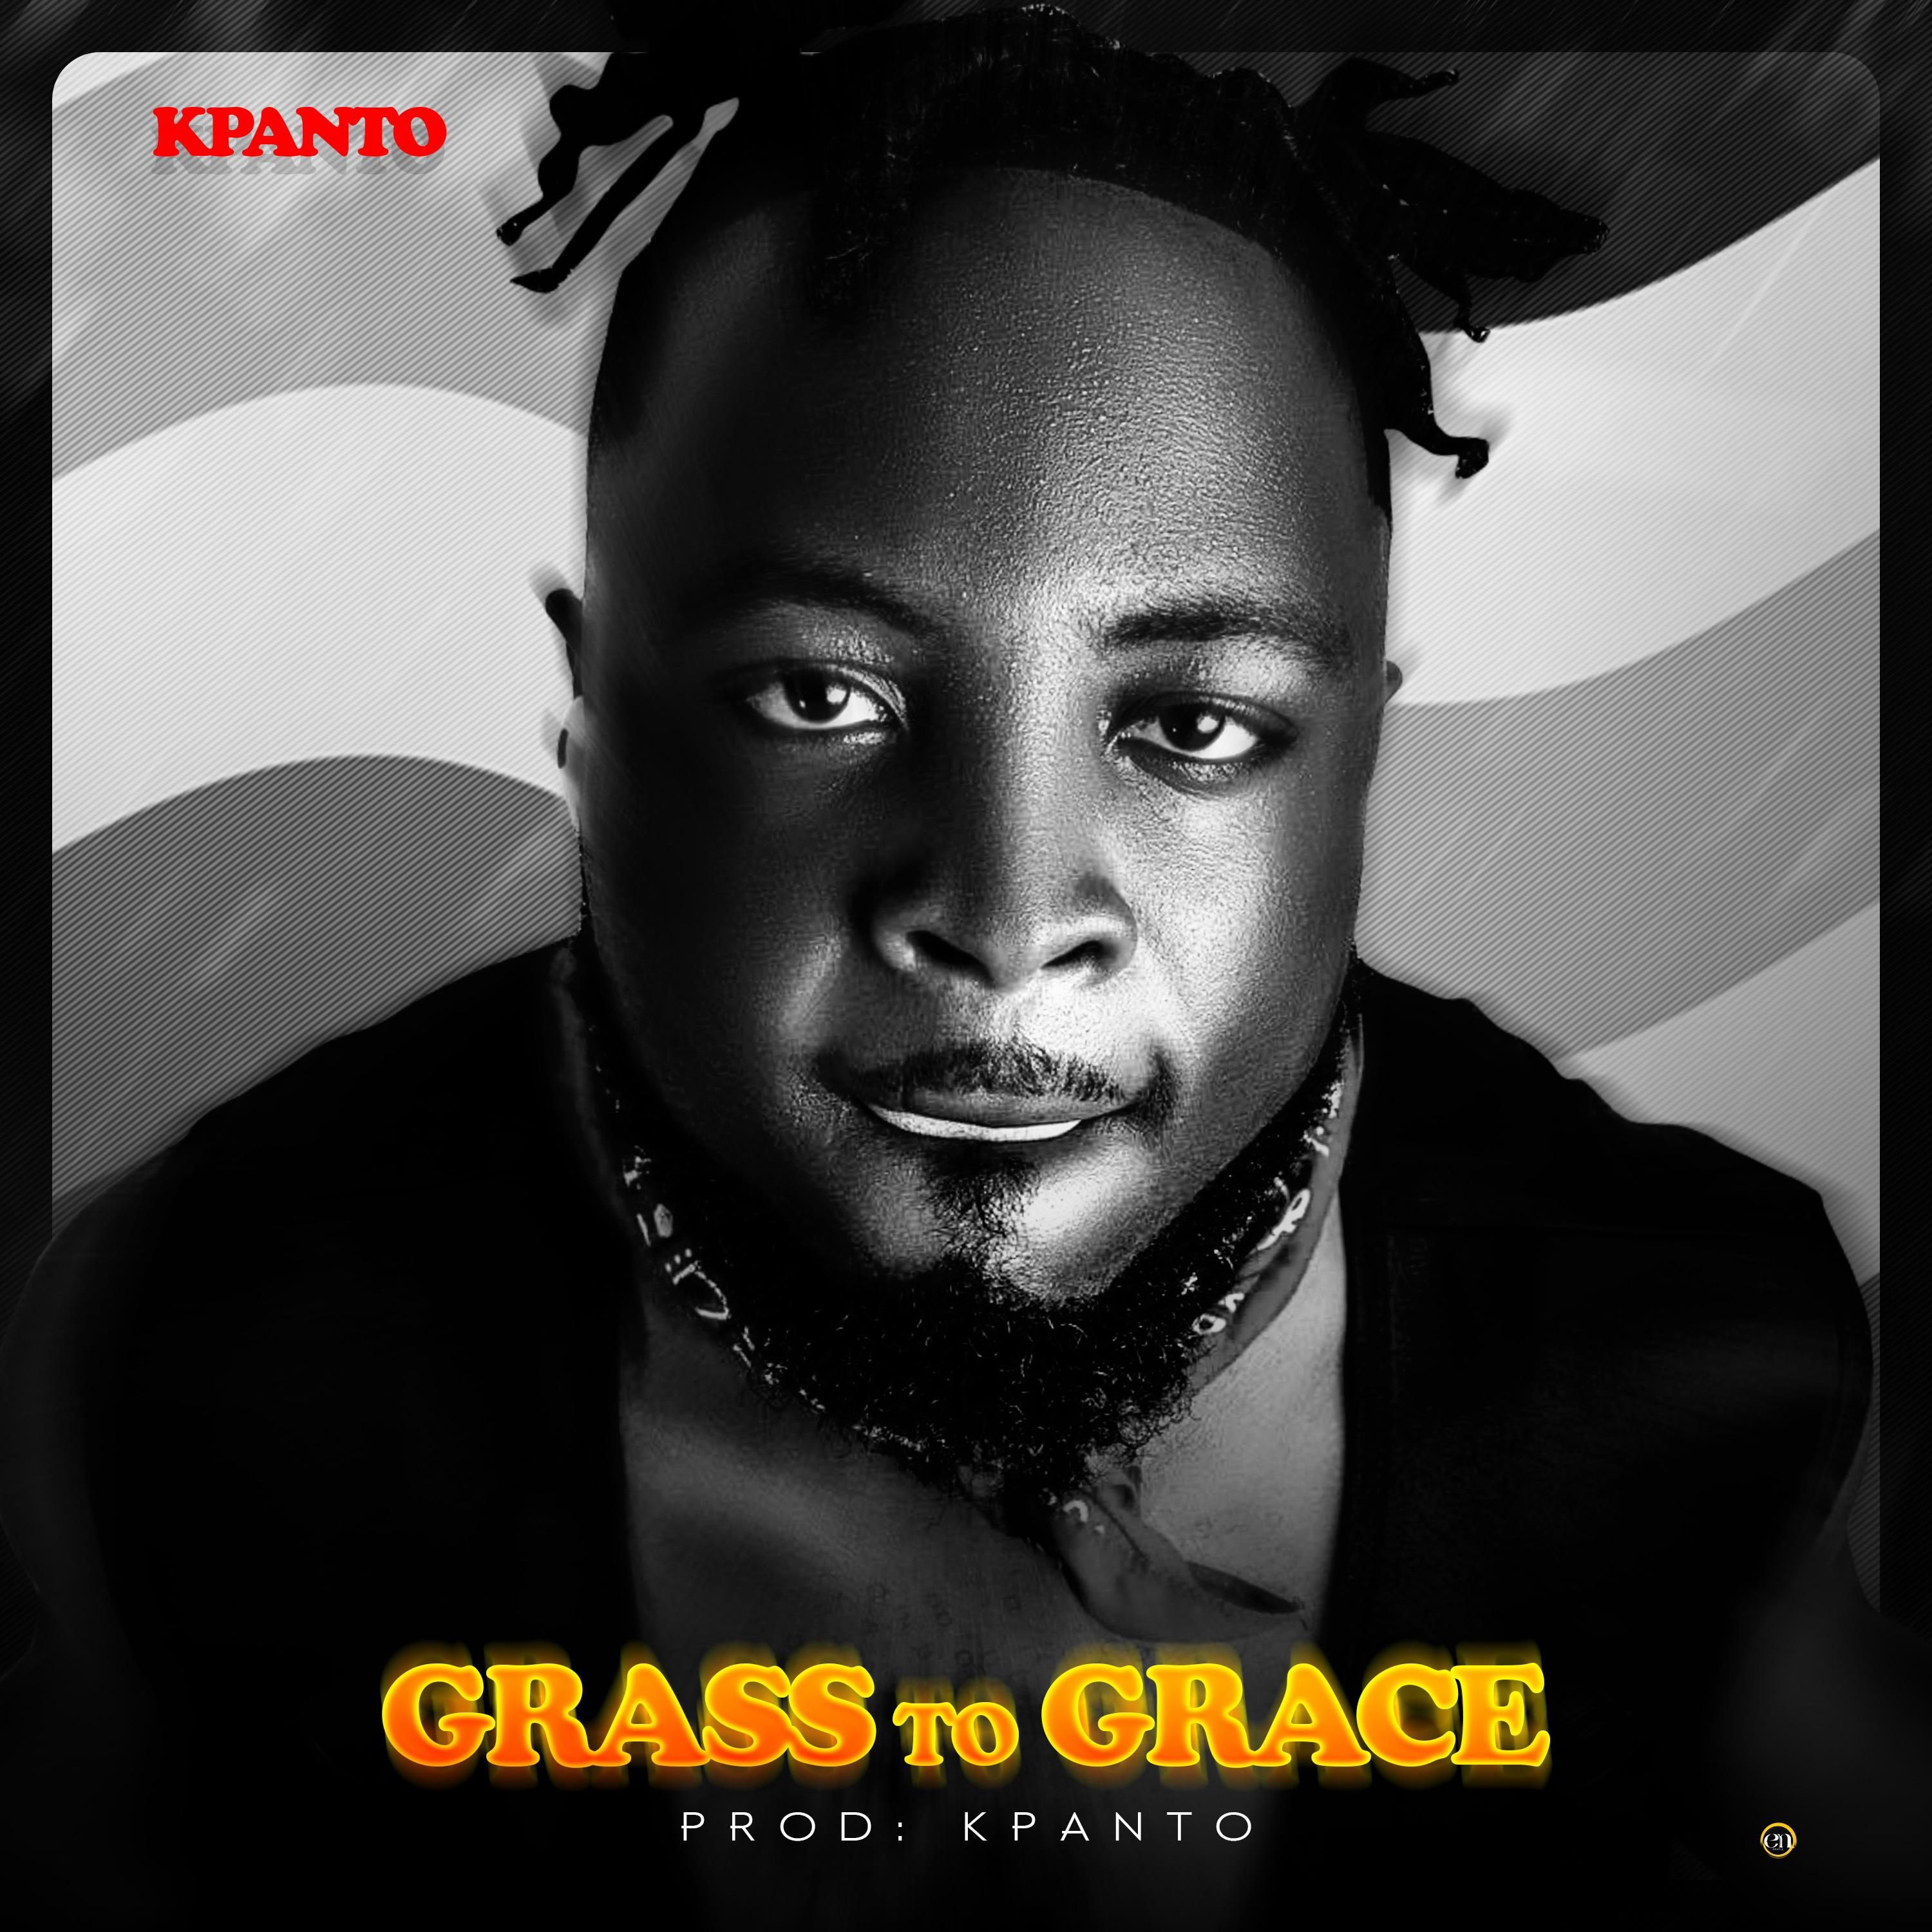 Kpanto - Grass to Grace